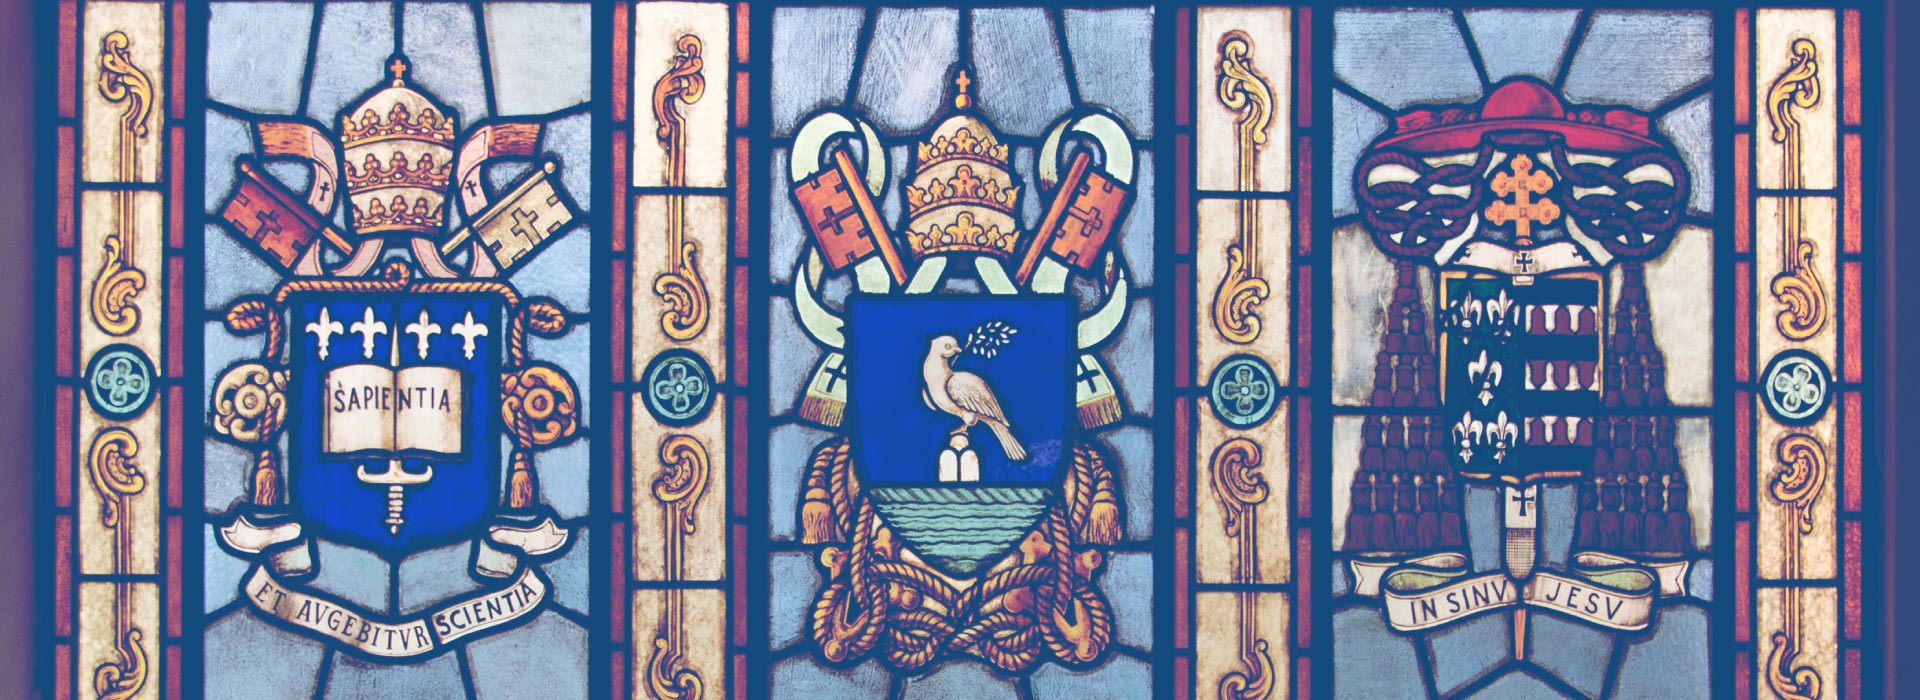 Imagem do Vitral com os emblemas da PUC-SP